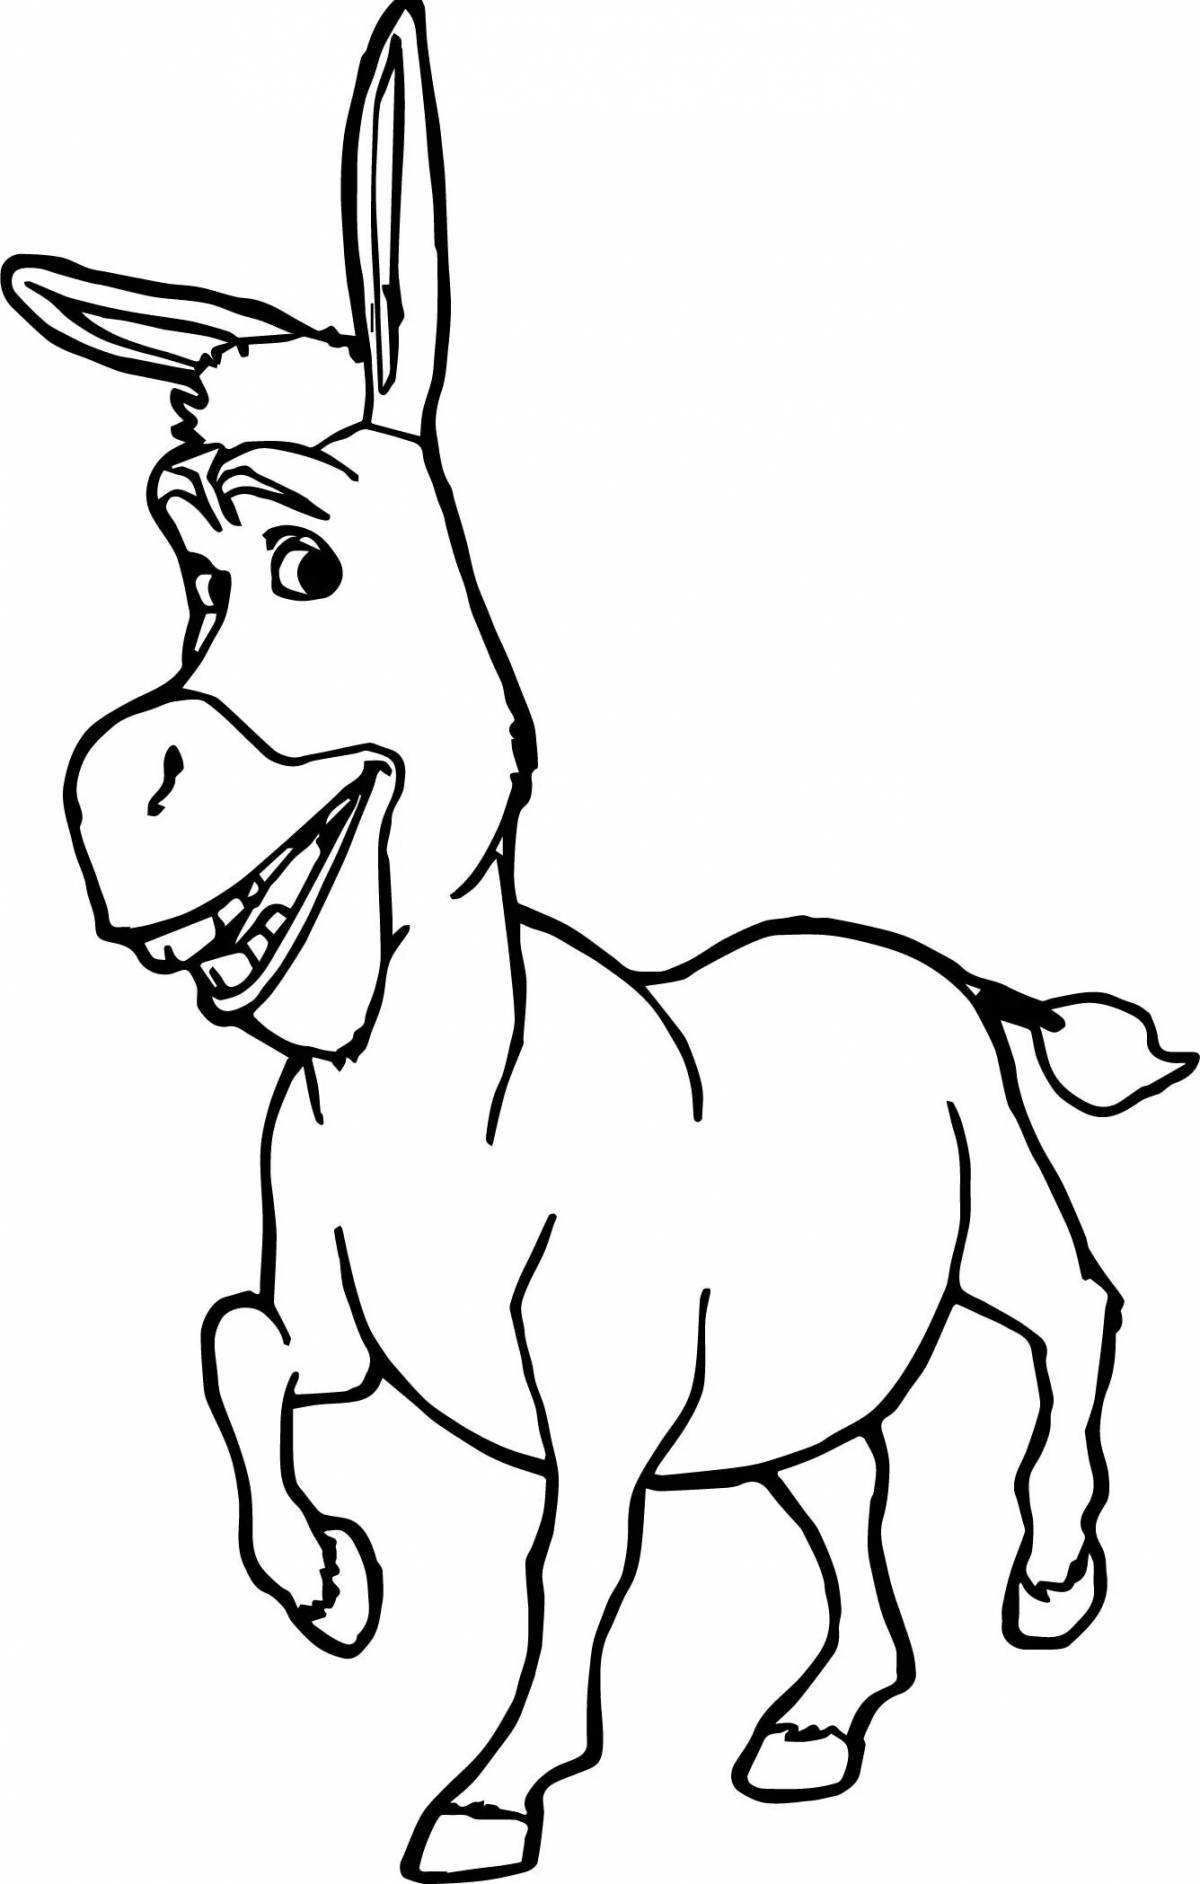 Fancy coloring donkey from shrek